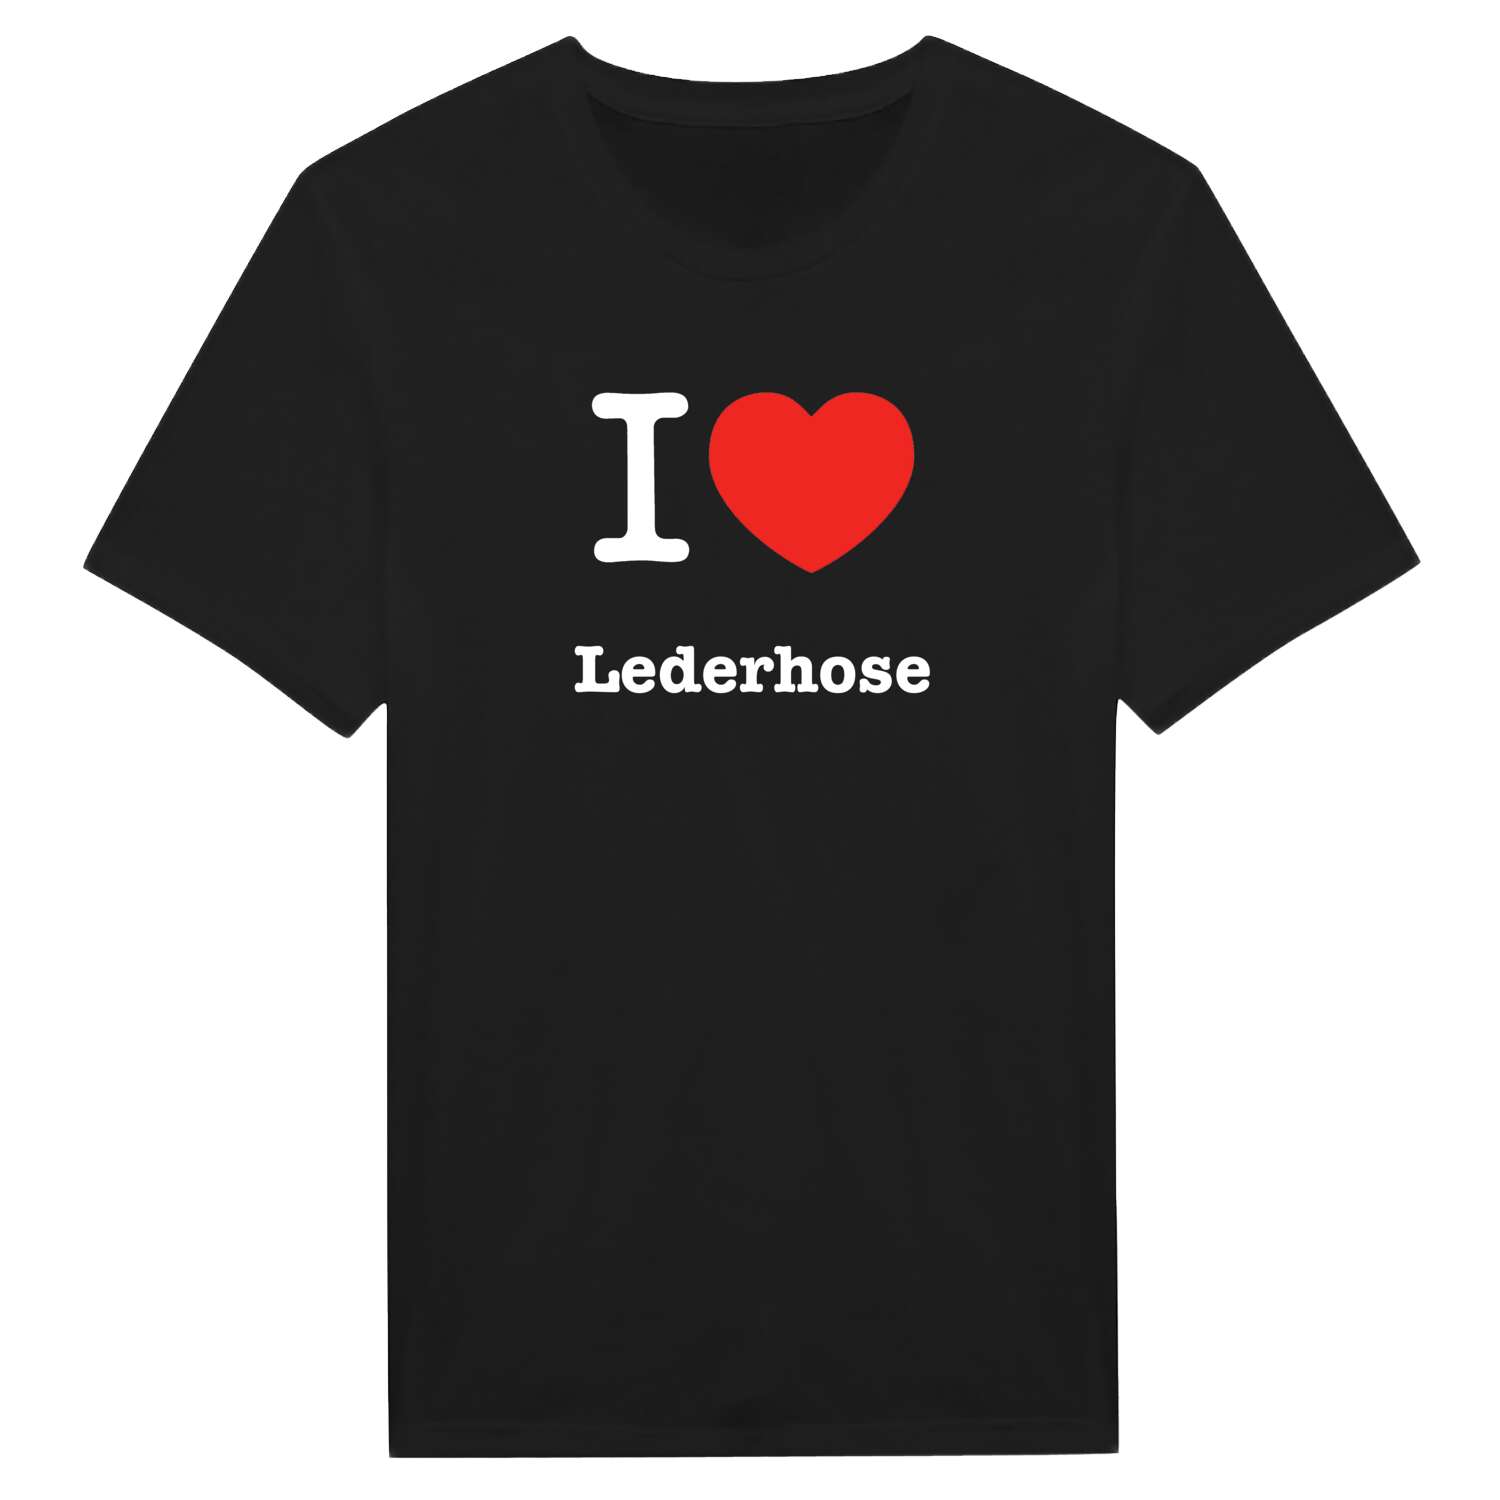 Lederhose T-Shirt »I love«